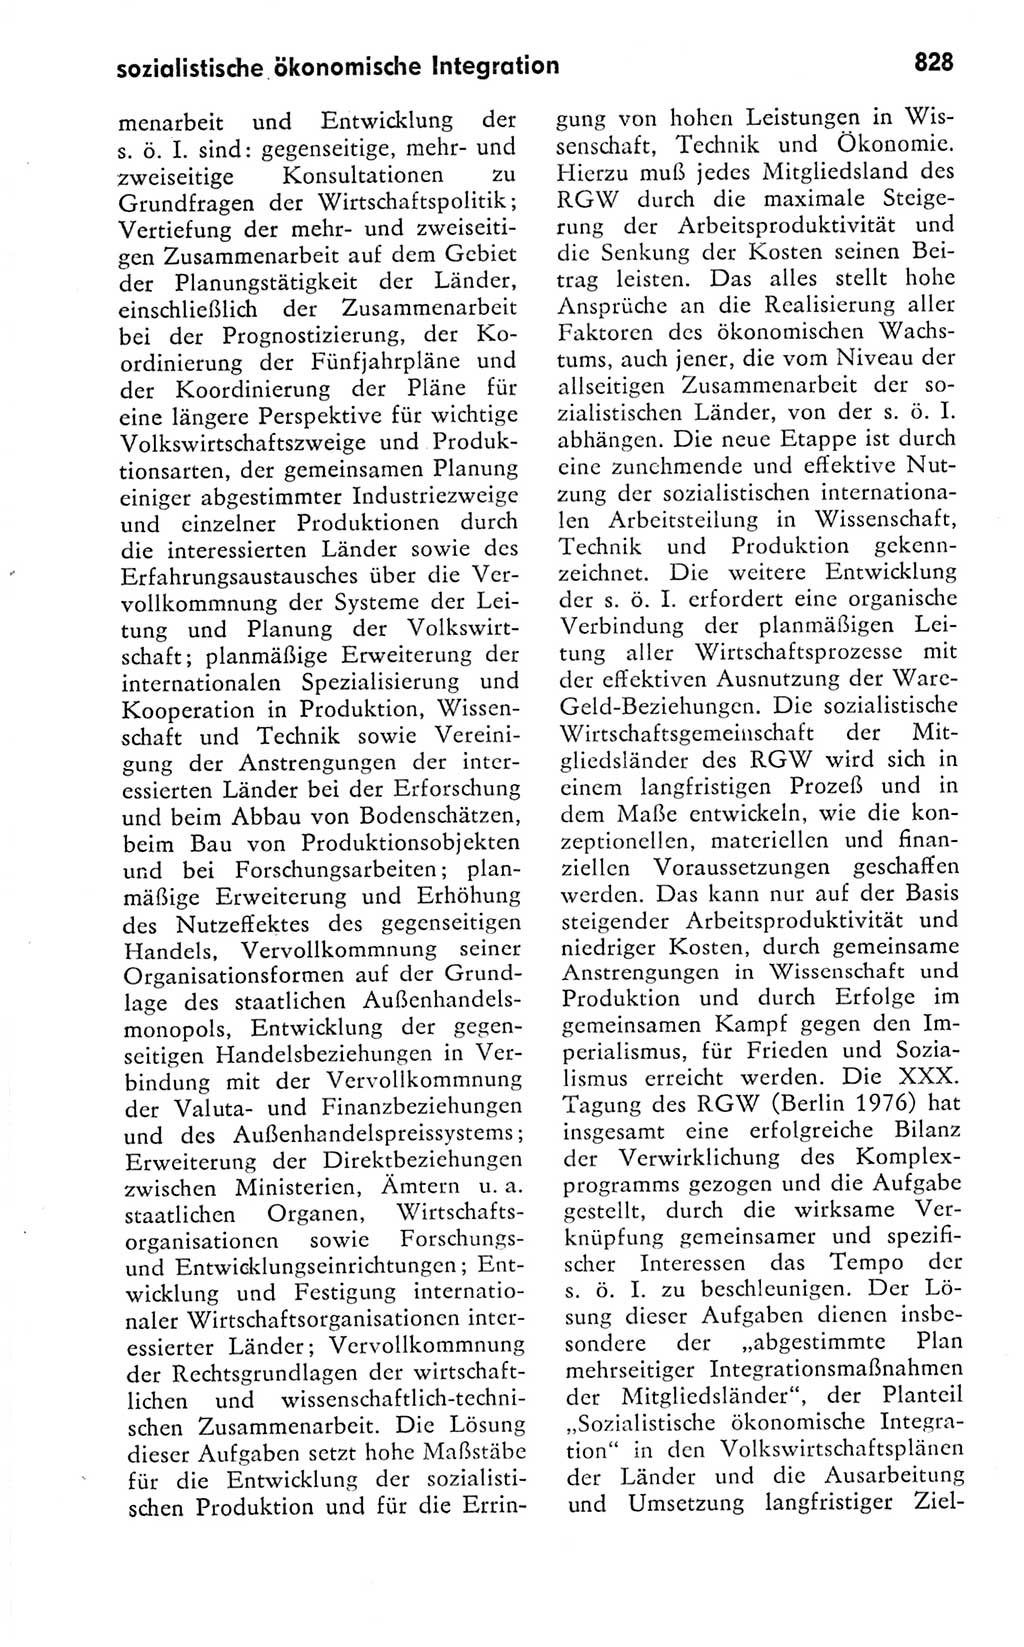 Kleines politisches Wörterbuch [Deutsche Demokratische Republik (DDR)] 1978, Seite 828 (Kl. pol. Wb. DDR 1978, S. 828)